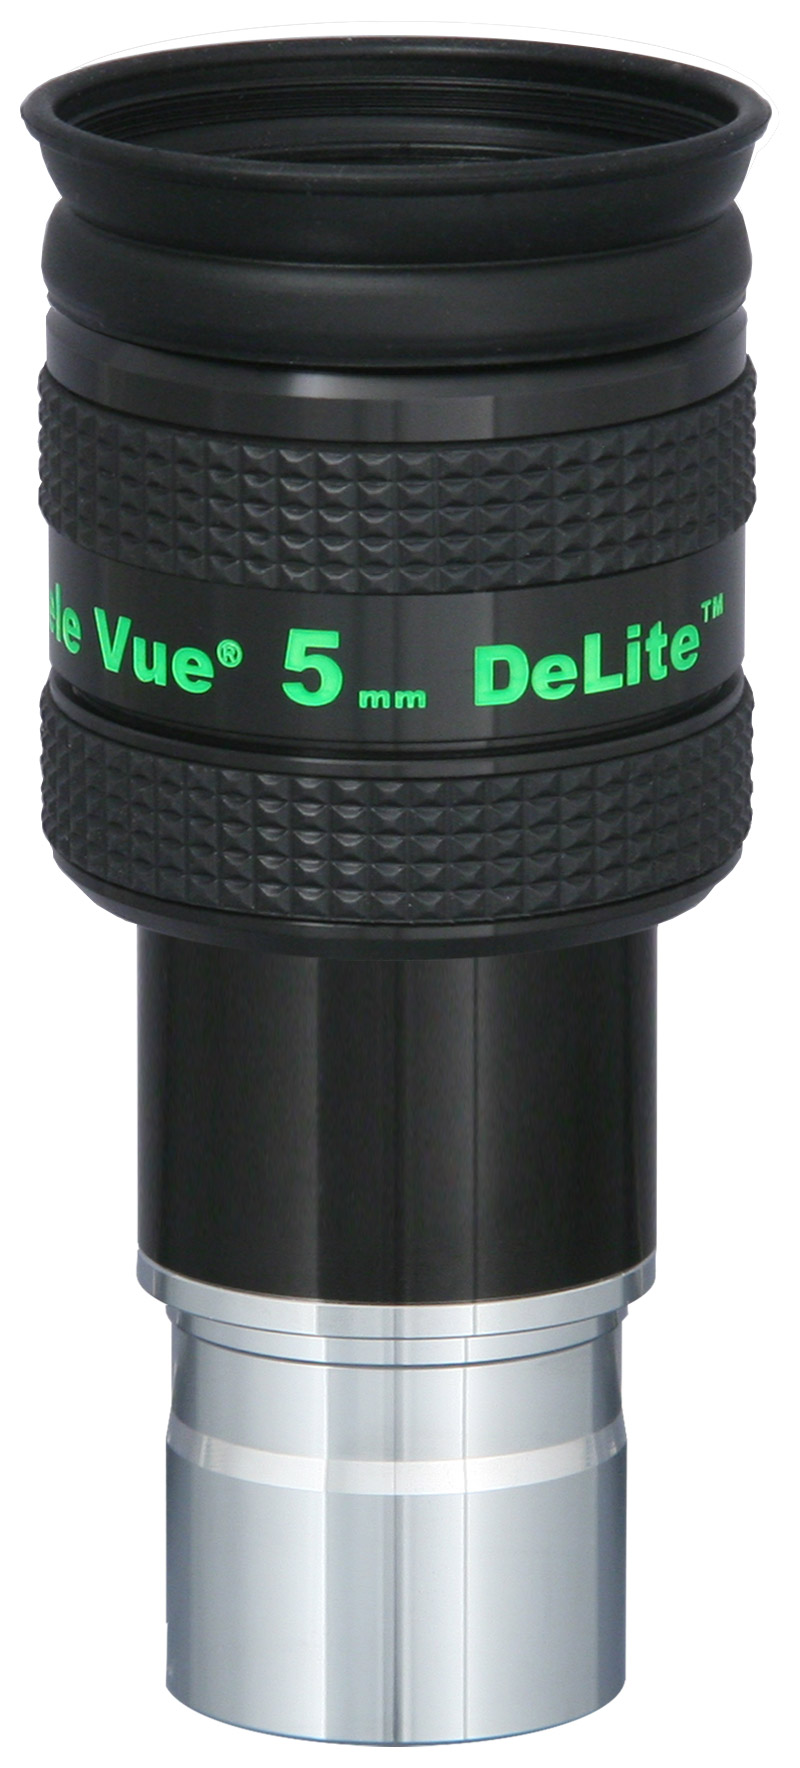 DeLite 5mm Eyepiece